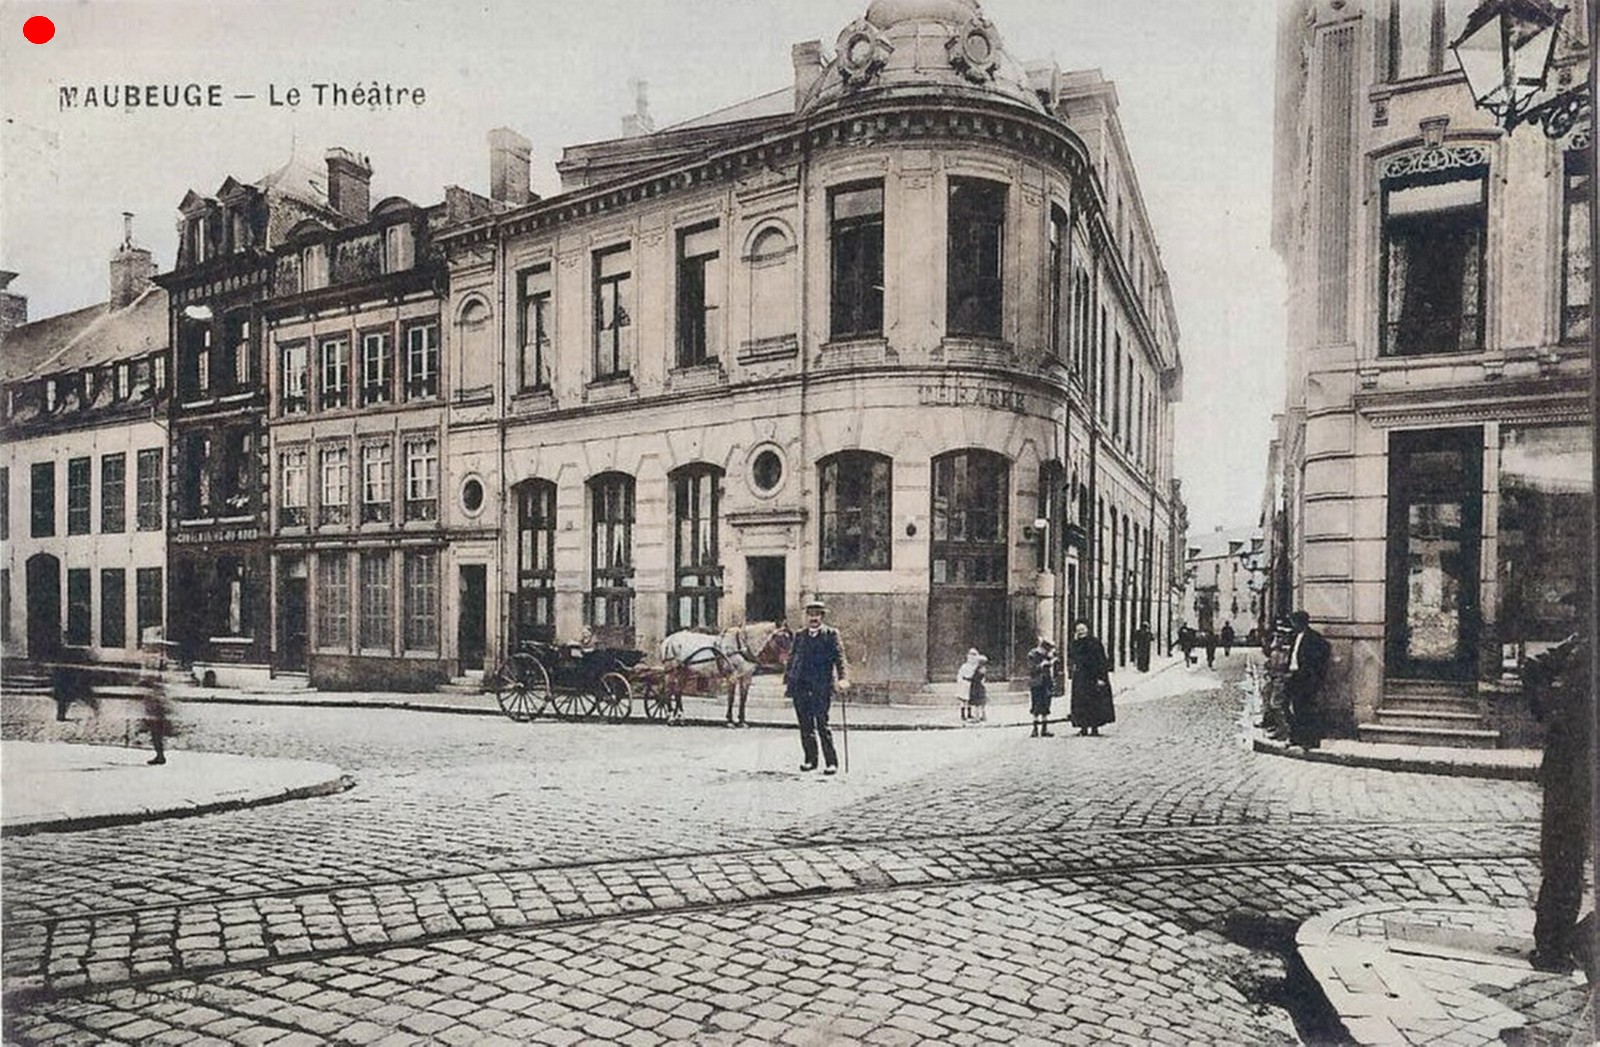 Cartes postales anciennes de Maubeuge, le théâtre bombardé